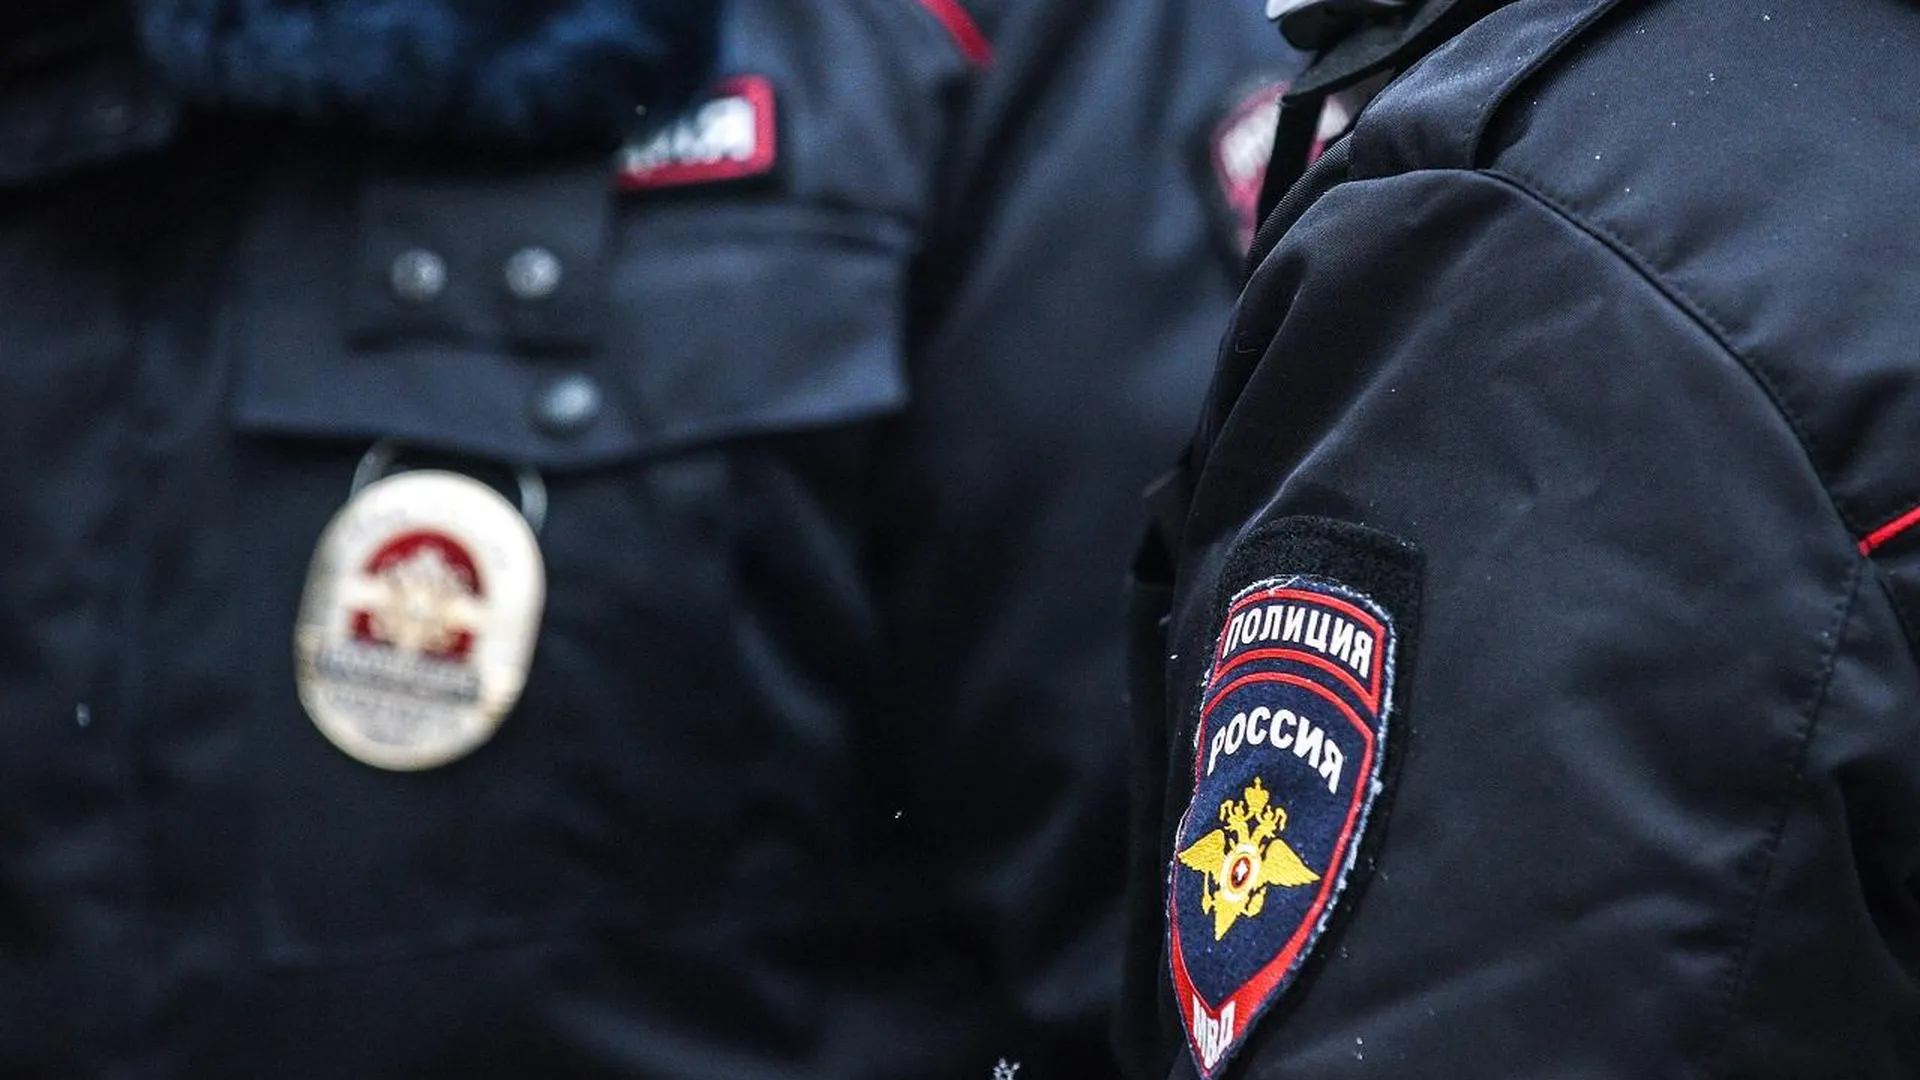 Двое мужчин получили ножевые ранения в ходе драки в подмосковном Чехове